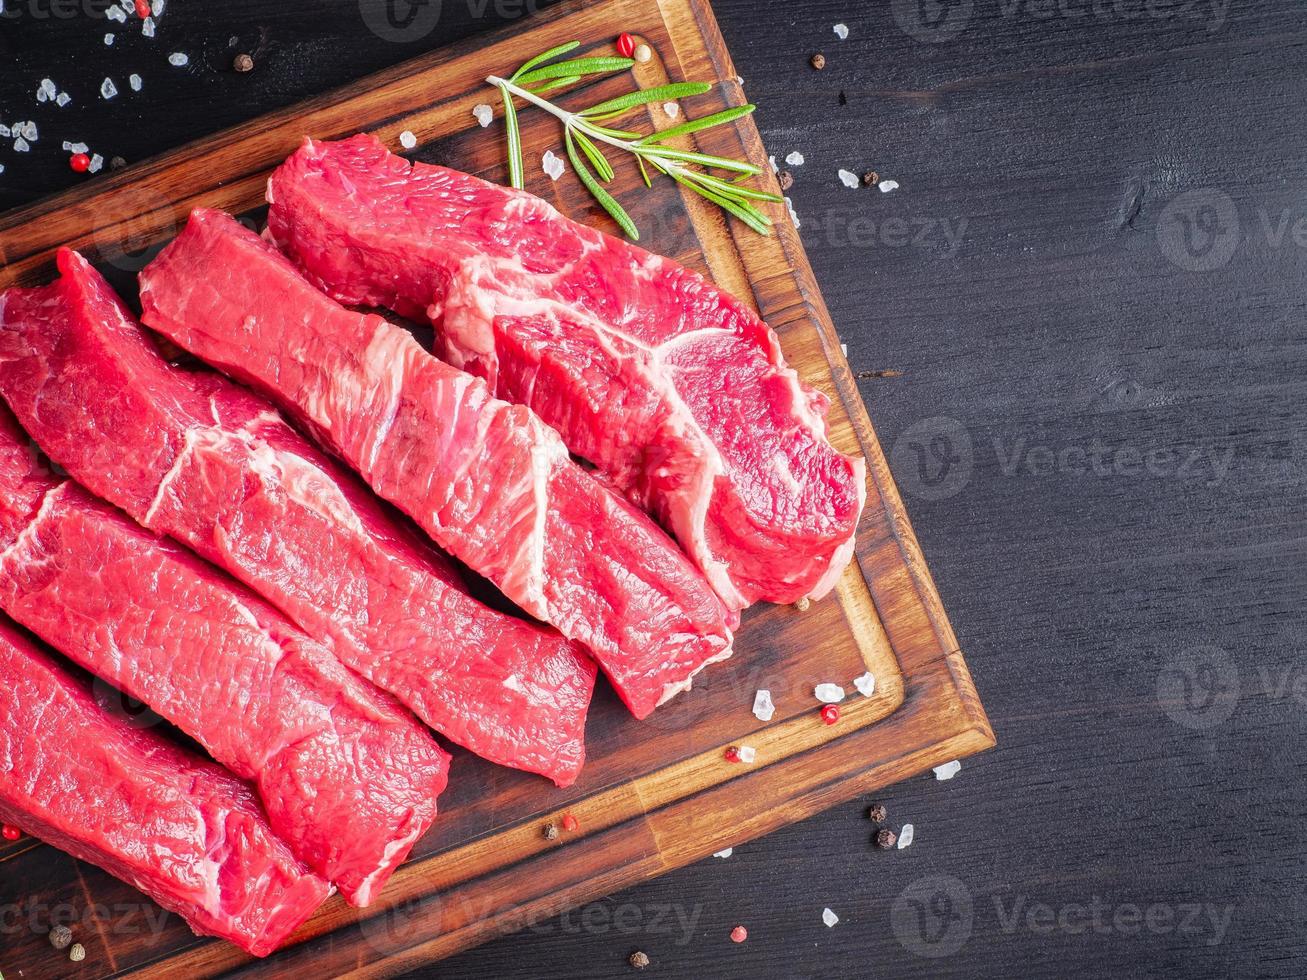 rauw vlees, biefstuk met kruiden op snijplank op donkere achtergrond met rozemarijn, foto